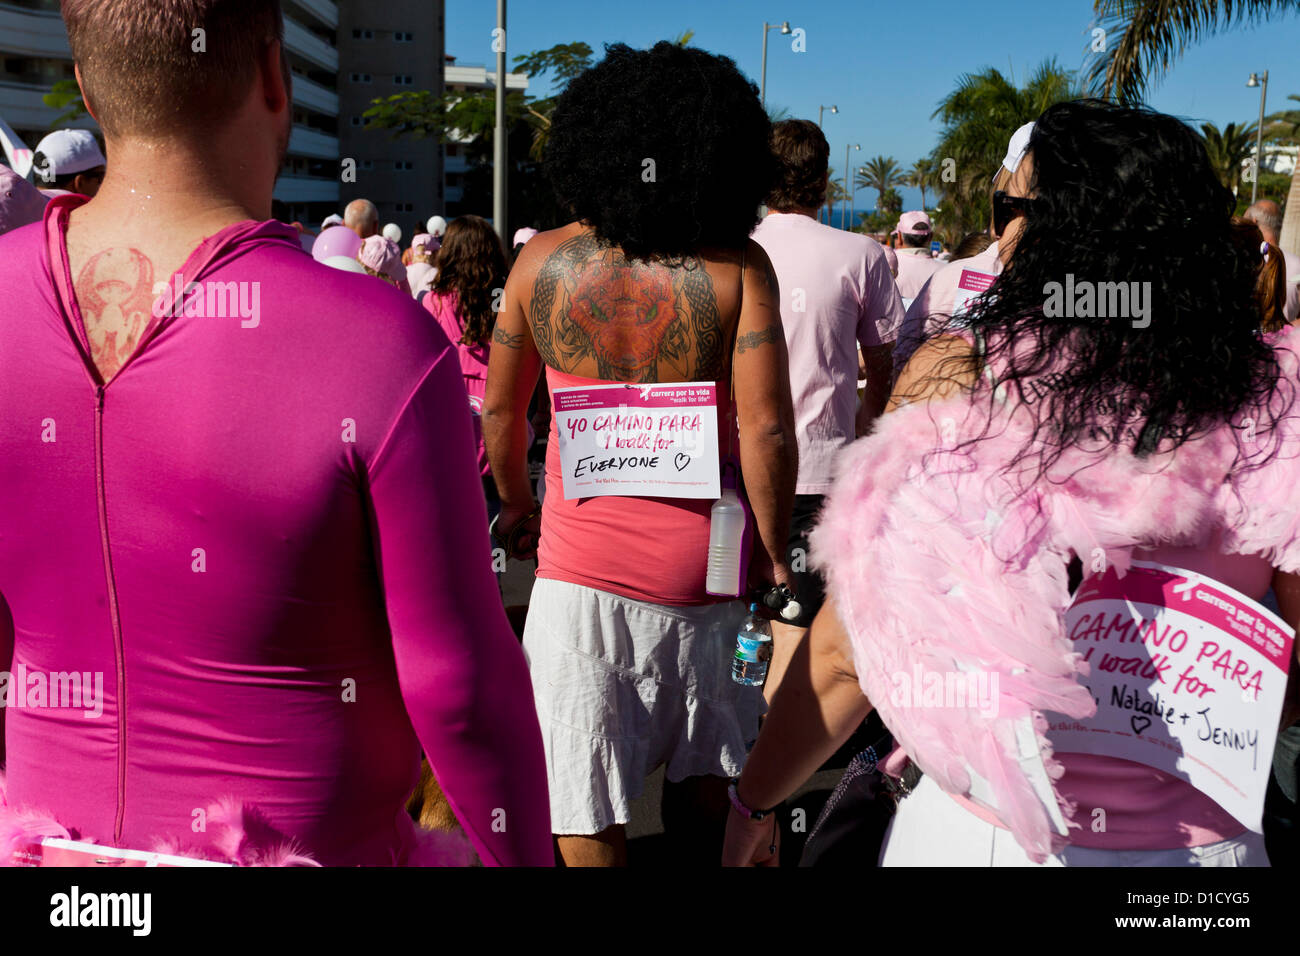 Über 2300 Menschen hob mehr als 16.000 Euro für wohltätige Zwecke arbeiten, um Brustkrebs zu bekämpfen, zu Fuß von der Magma-Zentrum in Las Americas, Los Cristianos, Teneriffa, Kanarische Inseln, Spanien. 16.12.2012. Stockfoto